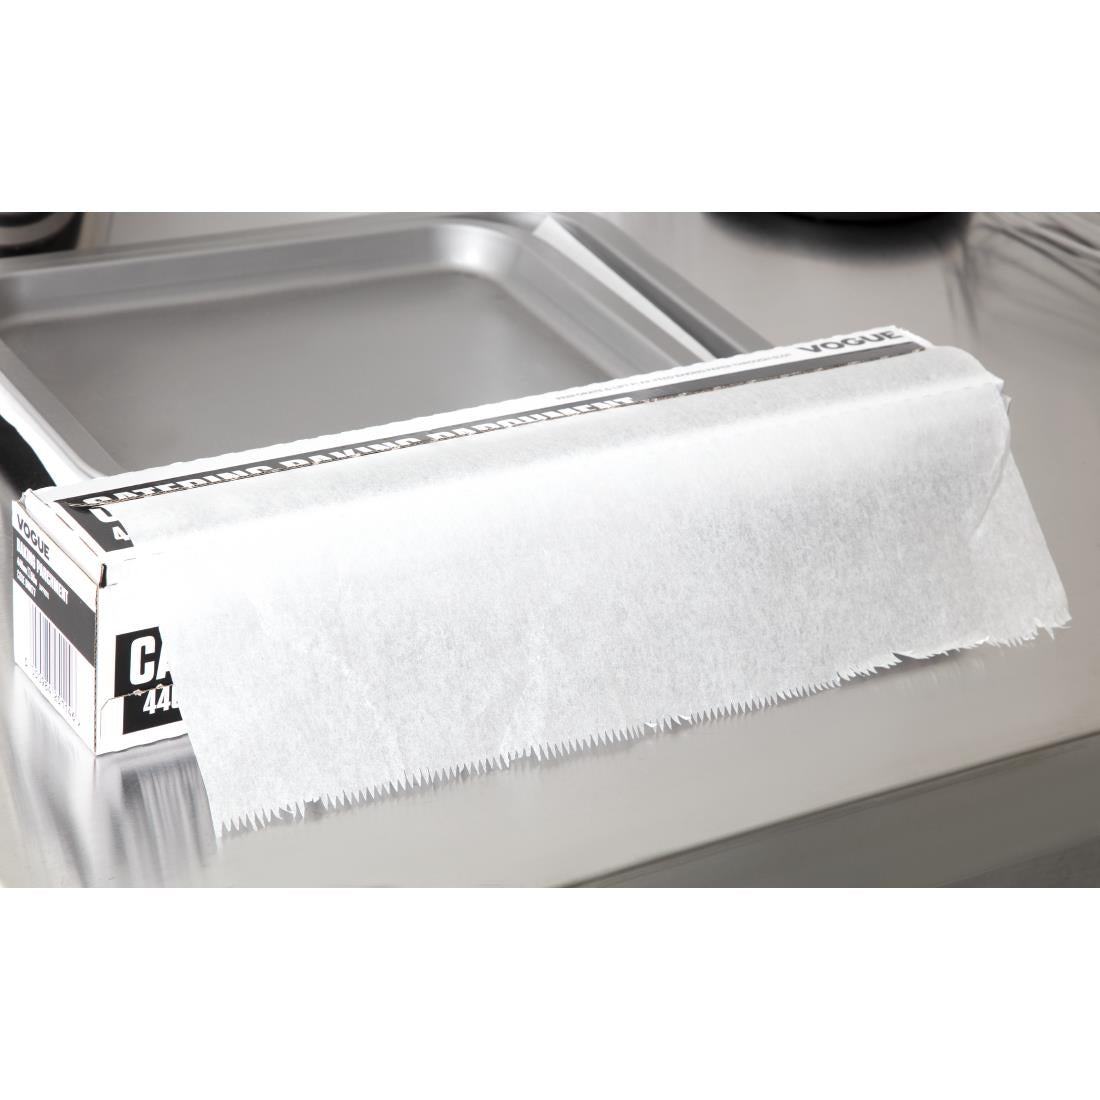 DM177 Vogue Baking Parchment Paper 440mm x 50m JD Catering Equipment Solutions Ltd